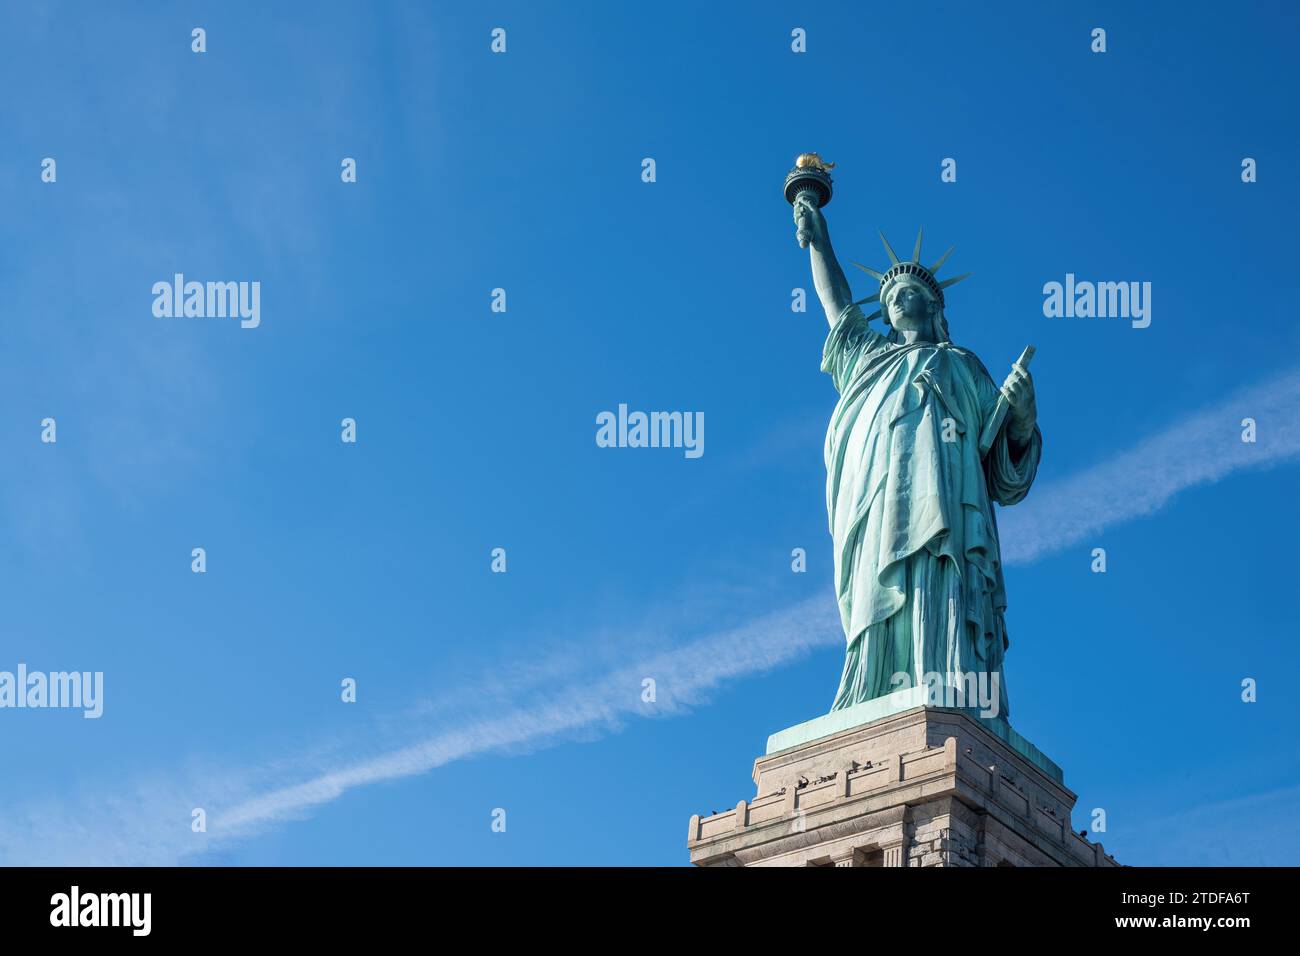 Magnifique vue vers le haut de la Statue de la liberté, symbolisant la liberté et la démocratie contre un ciel bleu clair Banque D'Images